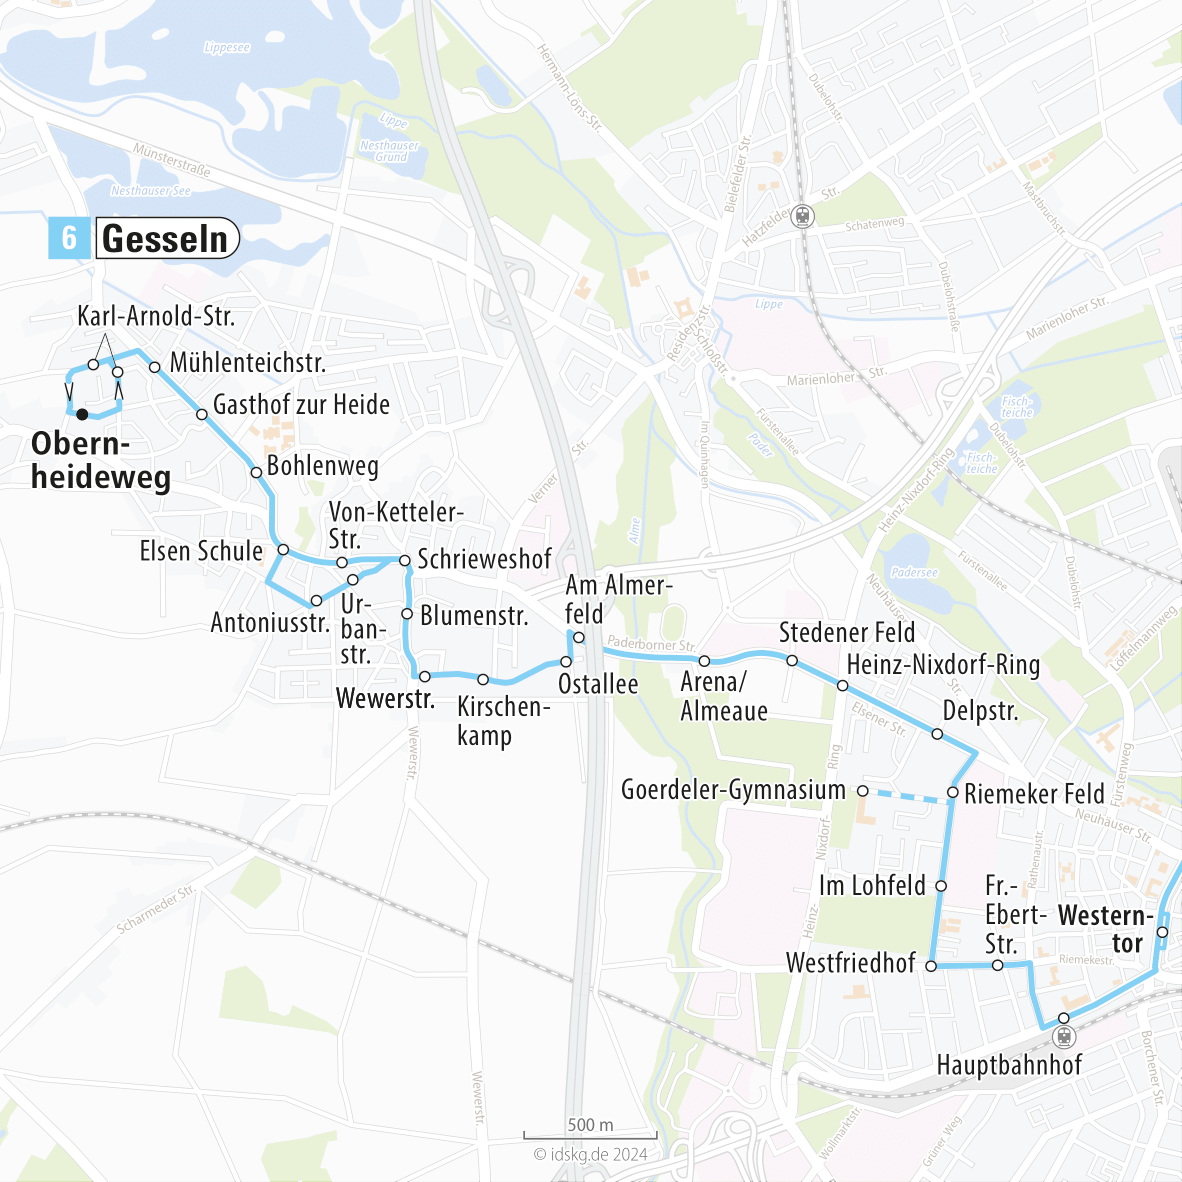 Kartenausschnitt der Linie 6 Gesseln bis Hauptbahnhof 15x15